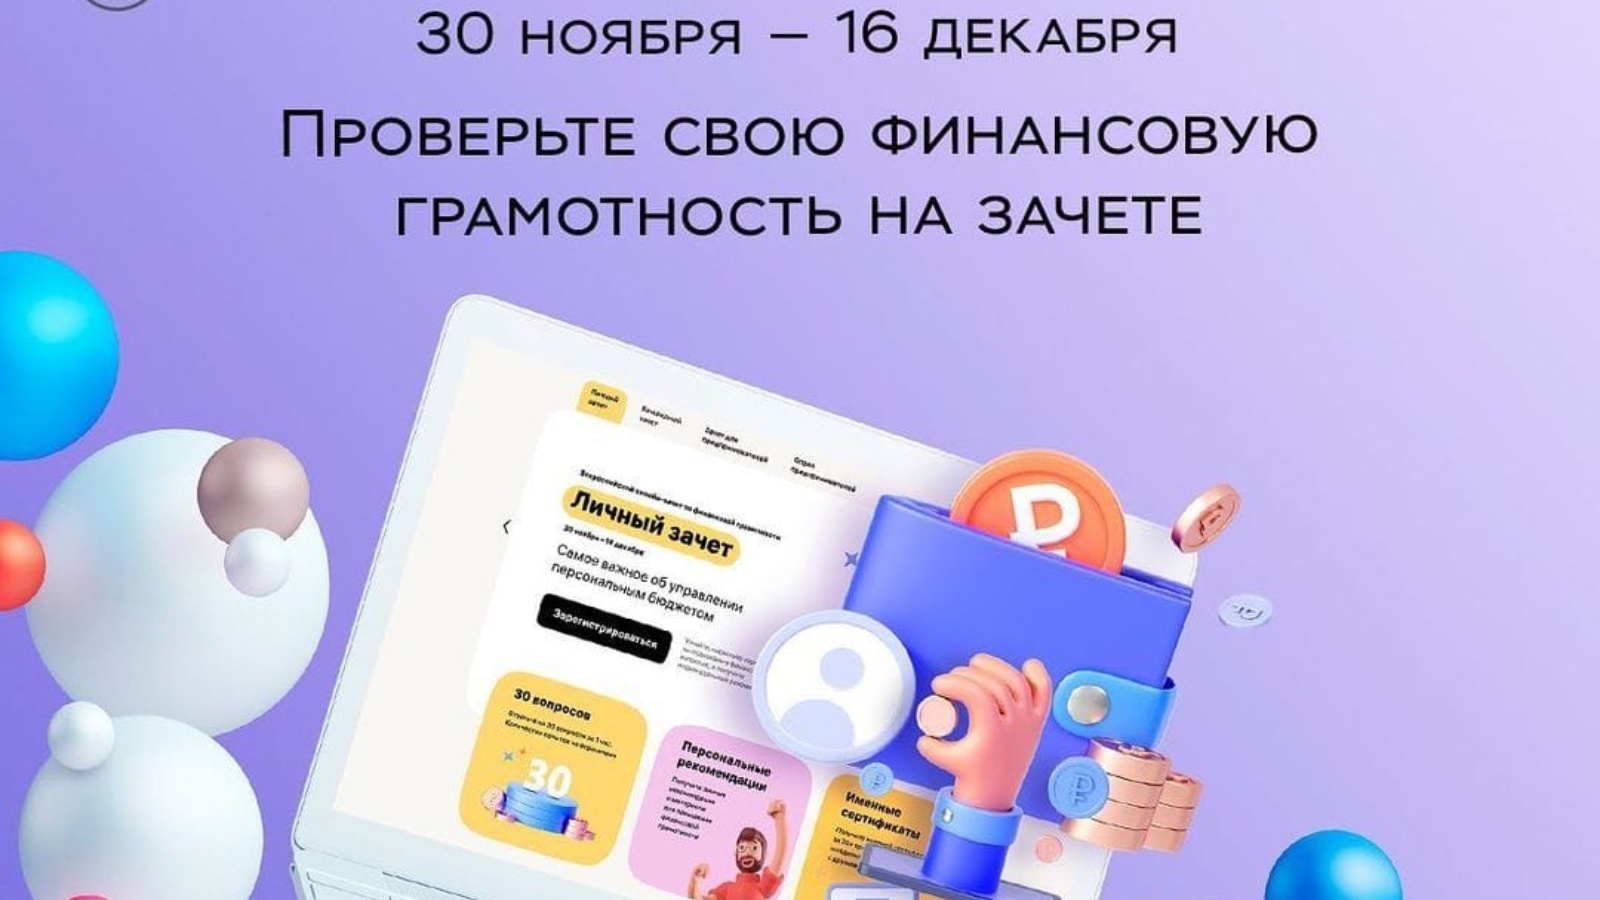 Всероссийский онлайн-зачёте по финансовой грамотности.